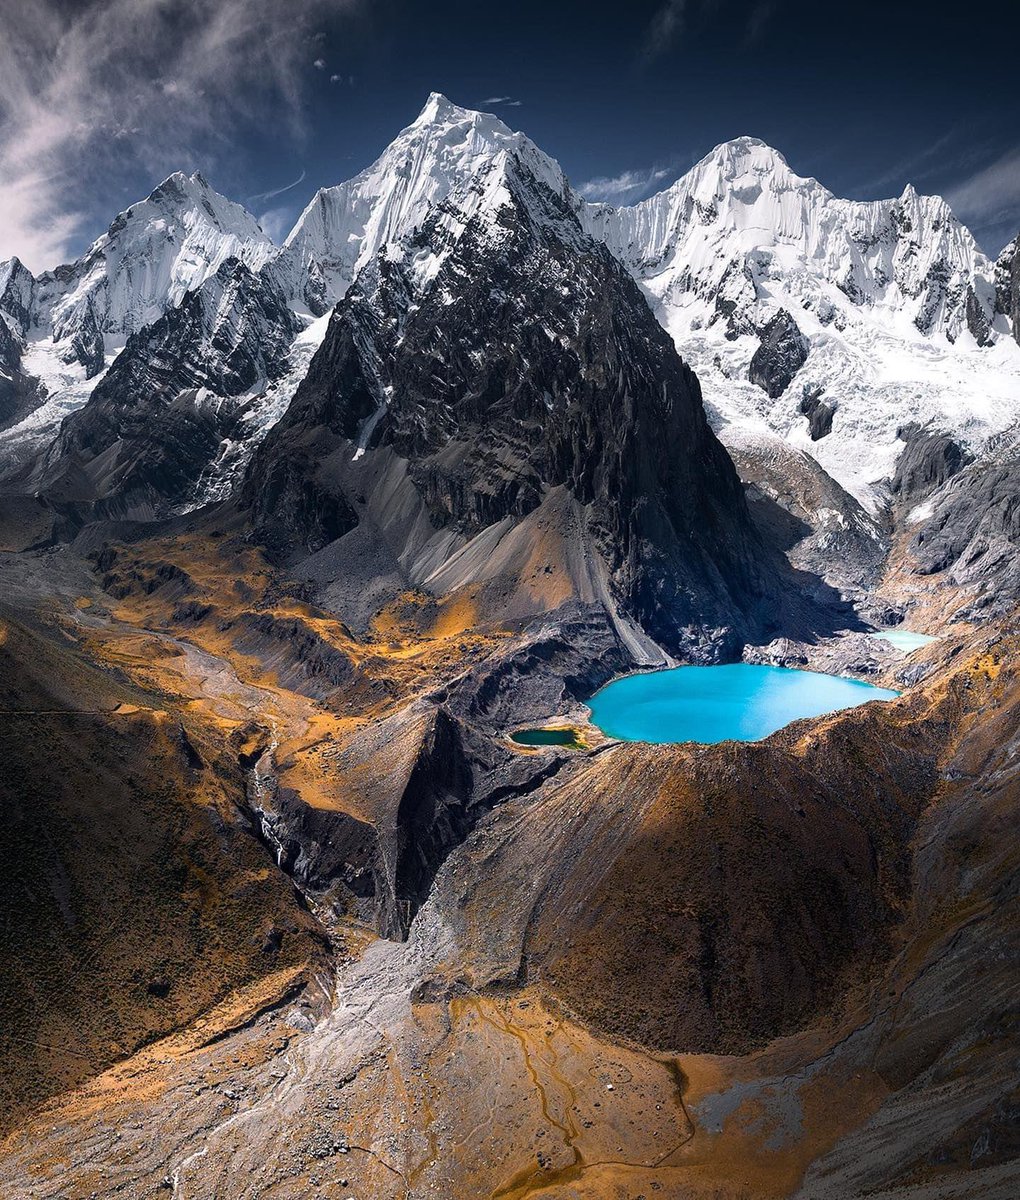 Jeoloji’nin doğayı şekillendirmesi.

Bazalt ve ismini aldığı Andezit kayalarından oluşan Cordillera Huayhuash Sıra Dağları, And Dağları-Peru.

📷Architecture & Design